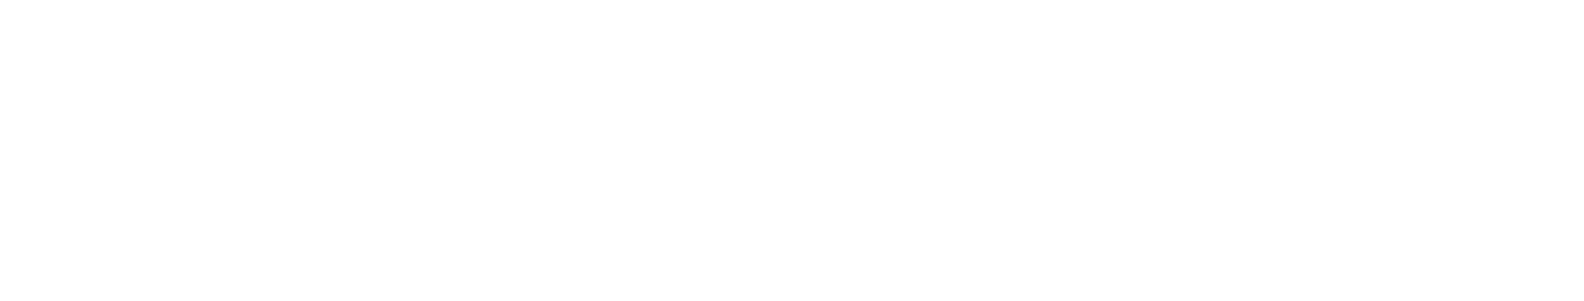 Amphenol logo large for dark backgrounds (transparent PNG)